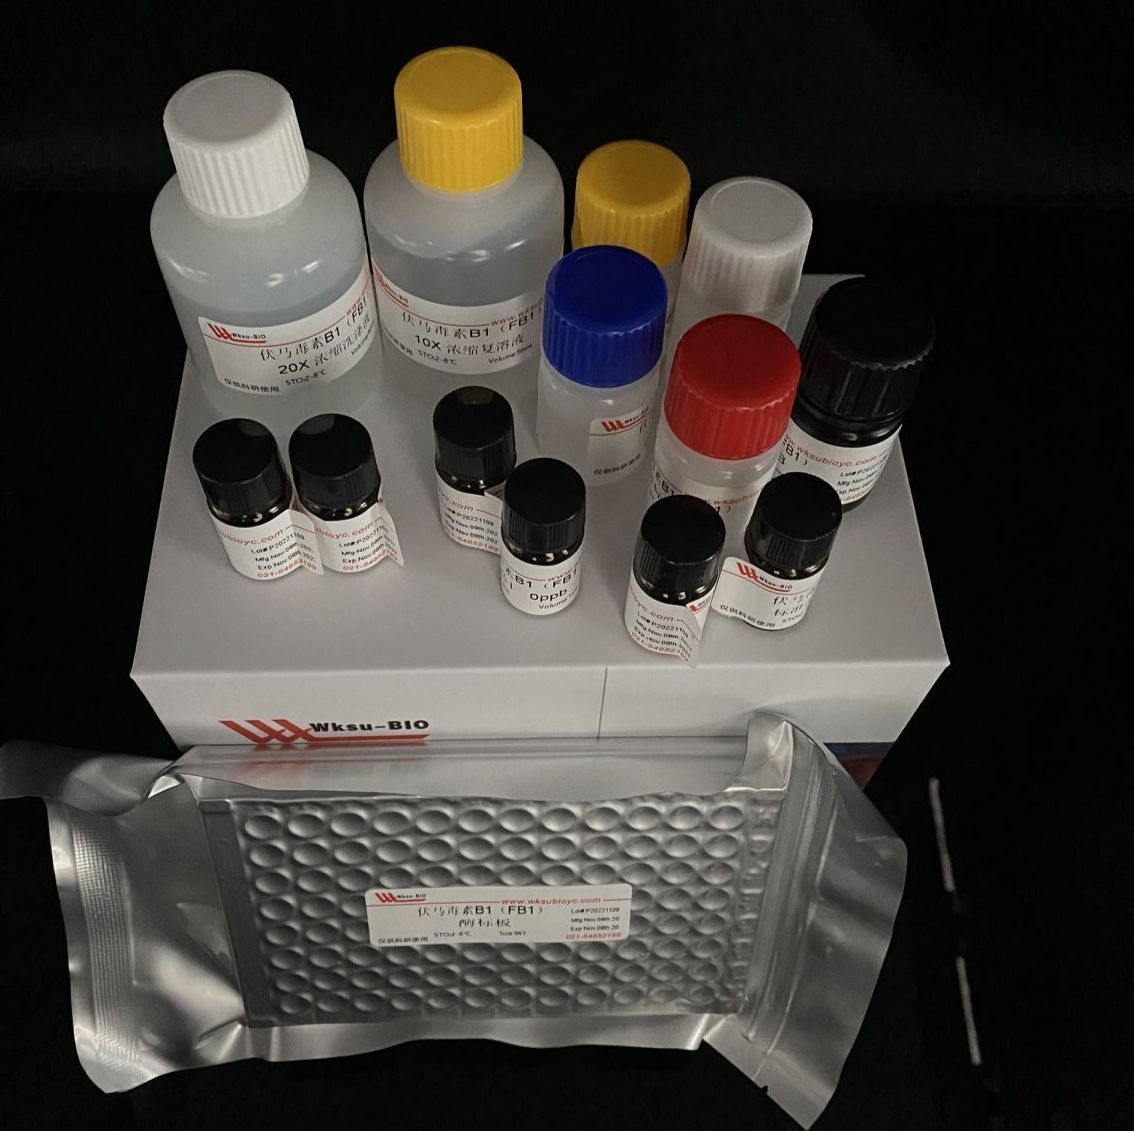 磷酸烯醇式丙tong酸羧化酶(PEPC)试剂盒,微板法